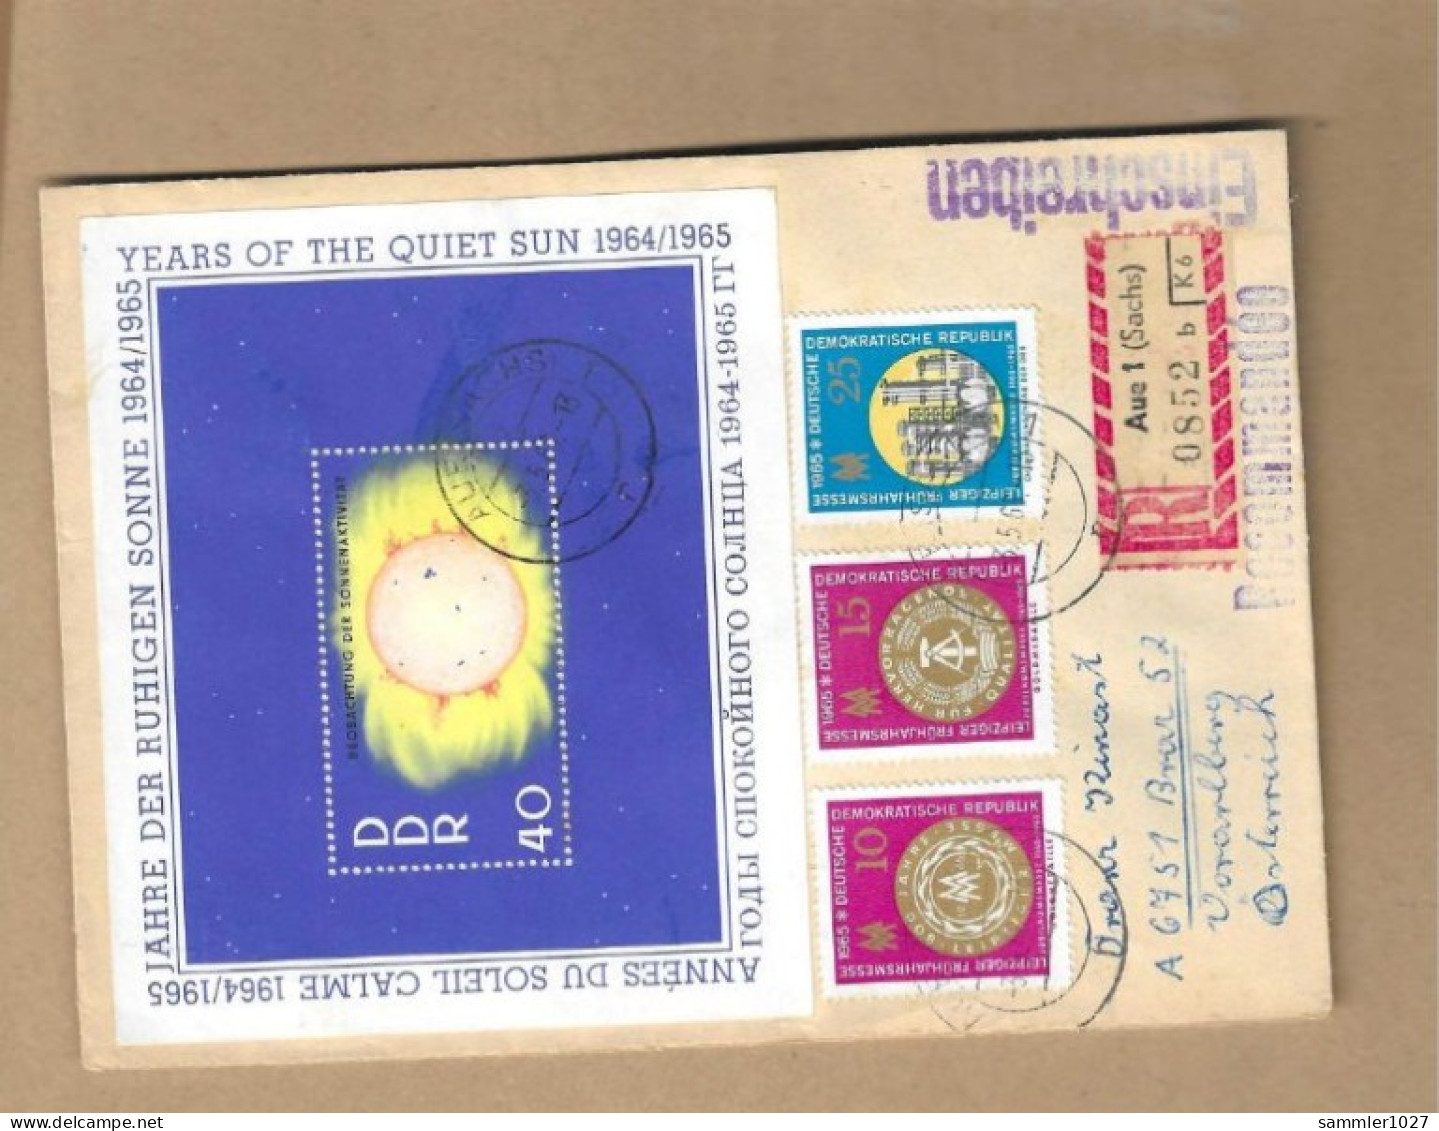 Los Vom 17.05 - Einschreiben-Briefumschlag Aus Aue 1966 - Lettres & Documents